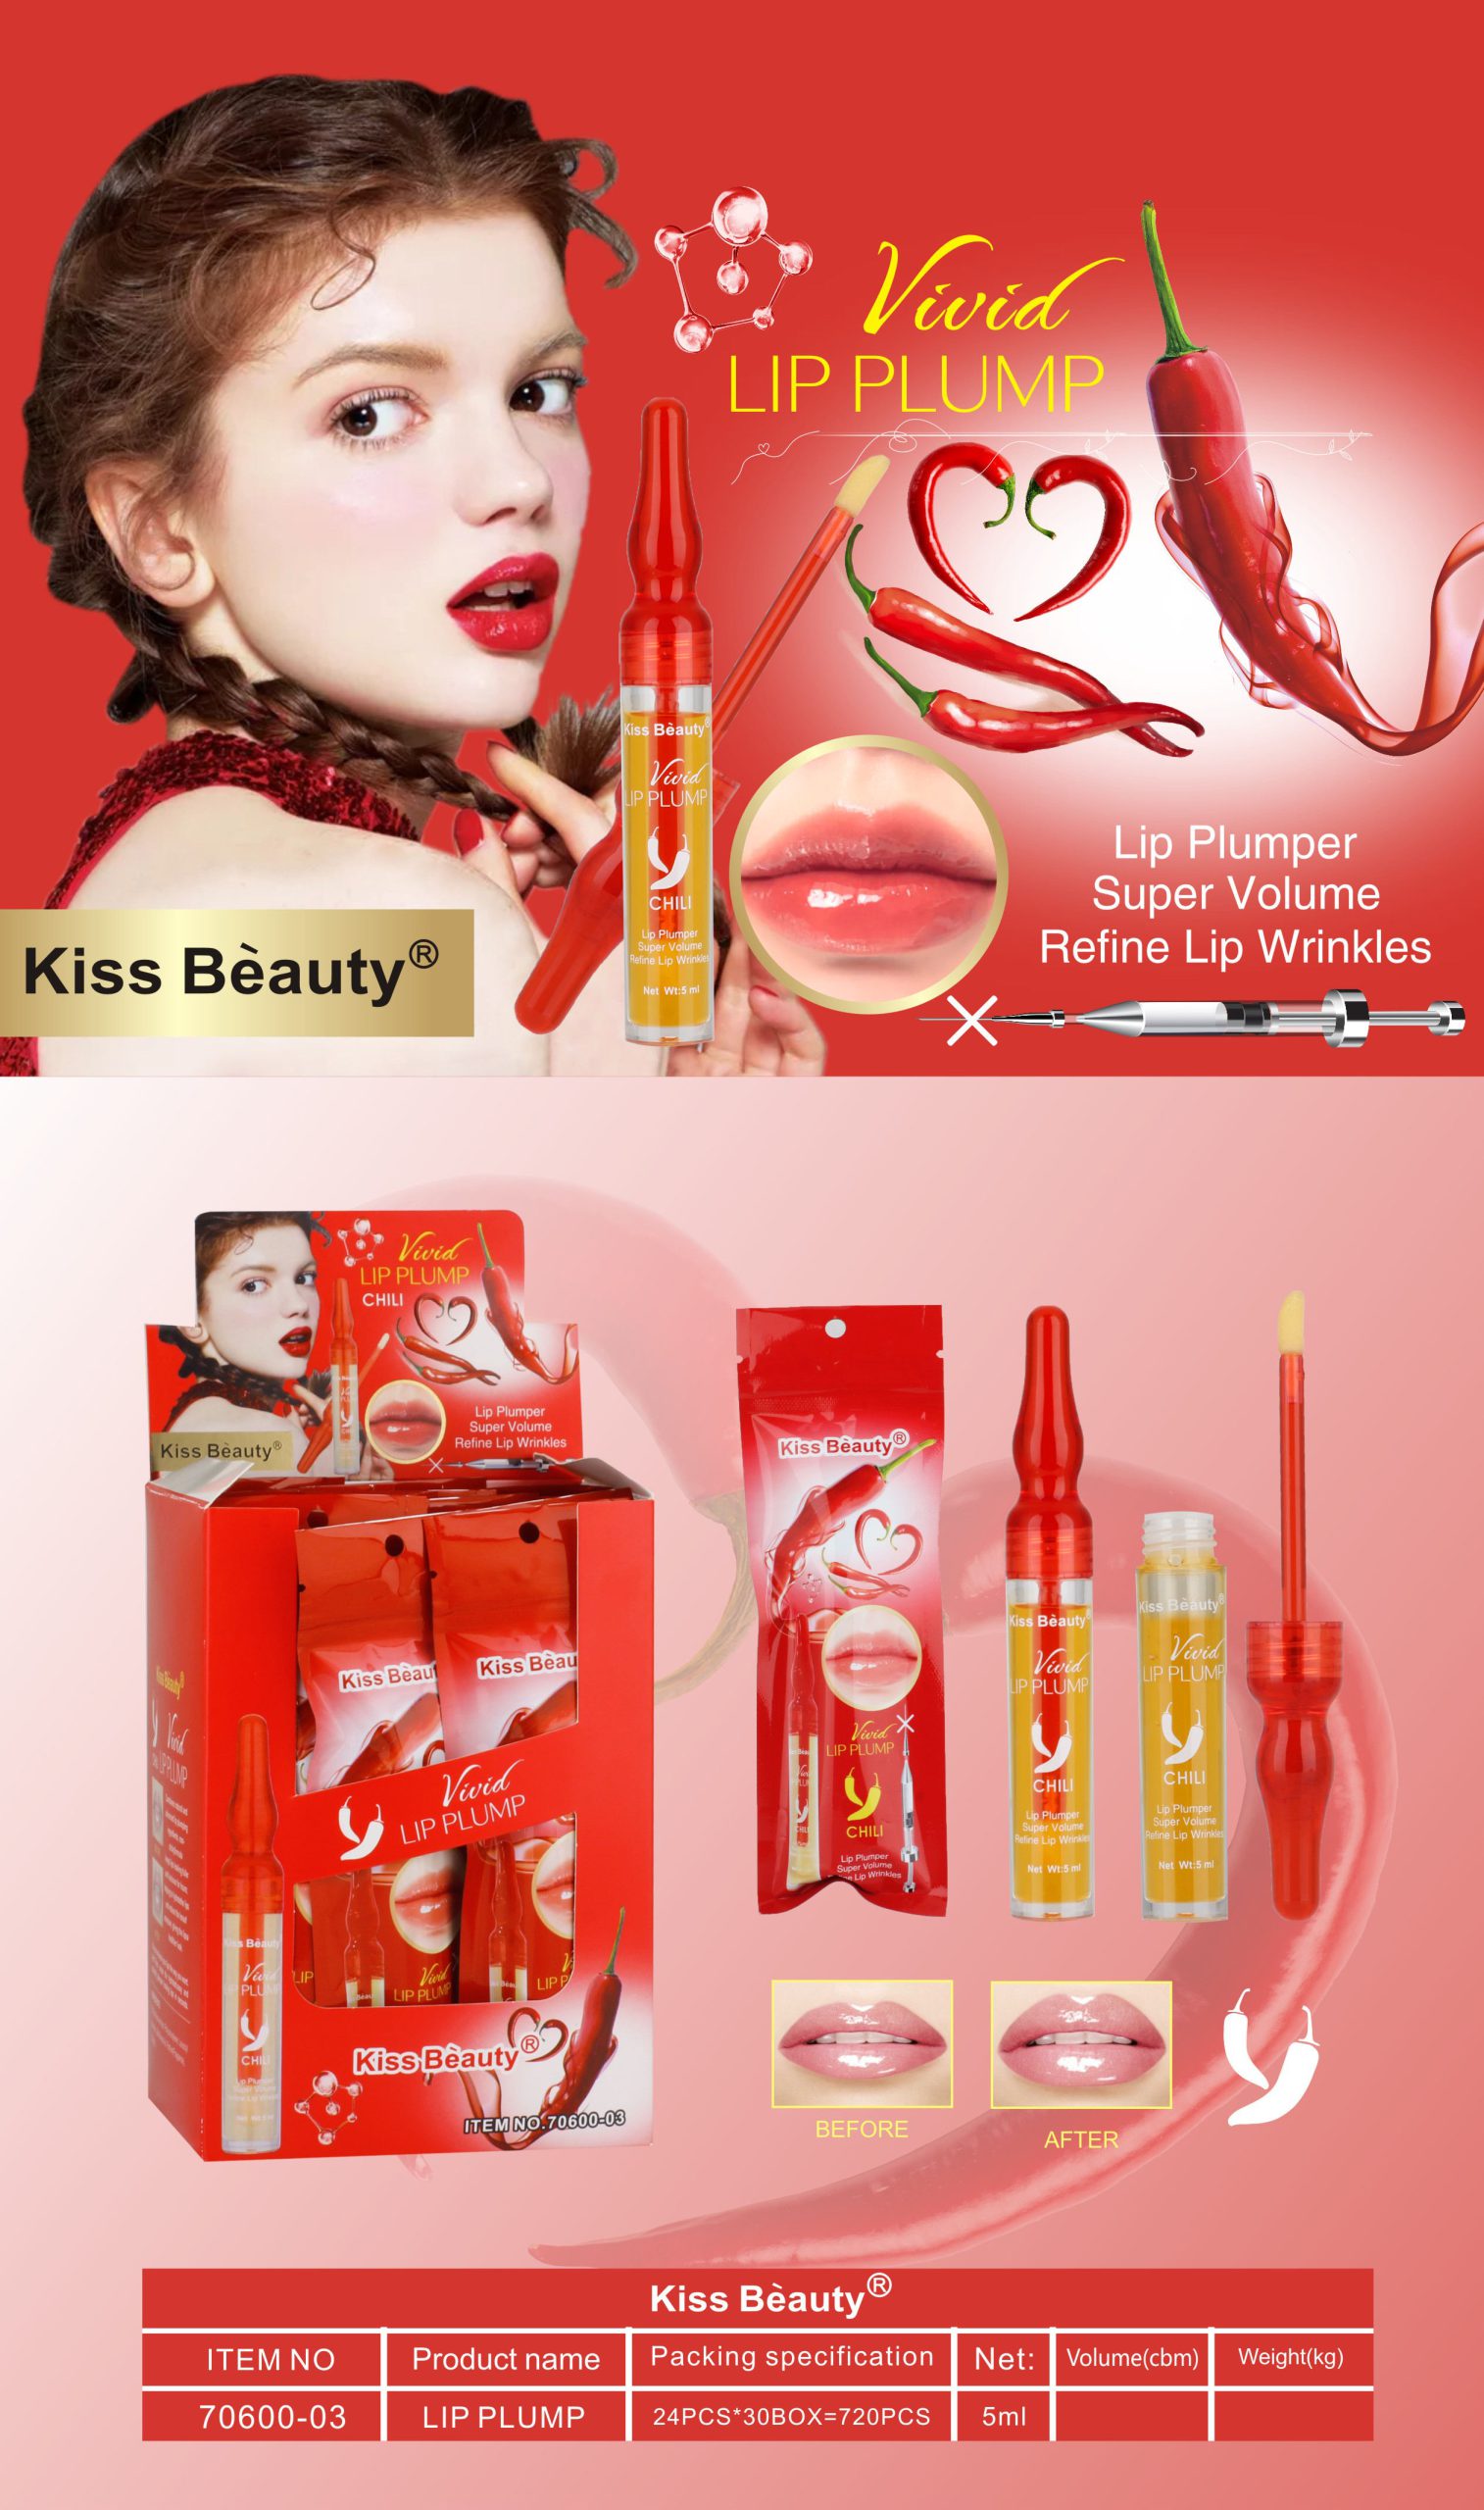 حجم دهنده لب آمپولی فلفلی اصلی کیس بیوتی 5میل Kiss Beauty Vivid Chili Lip Plumper